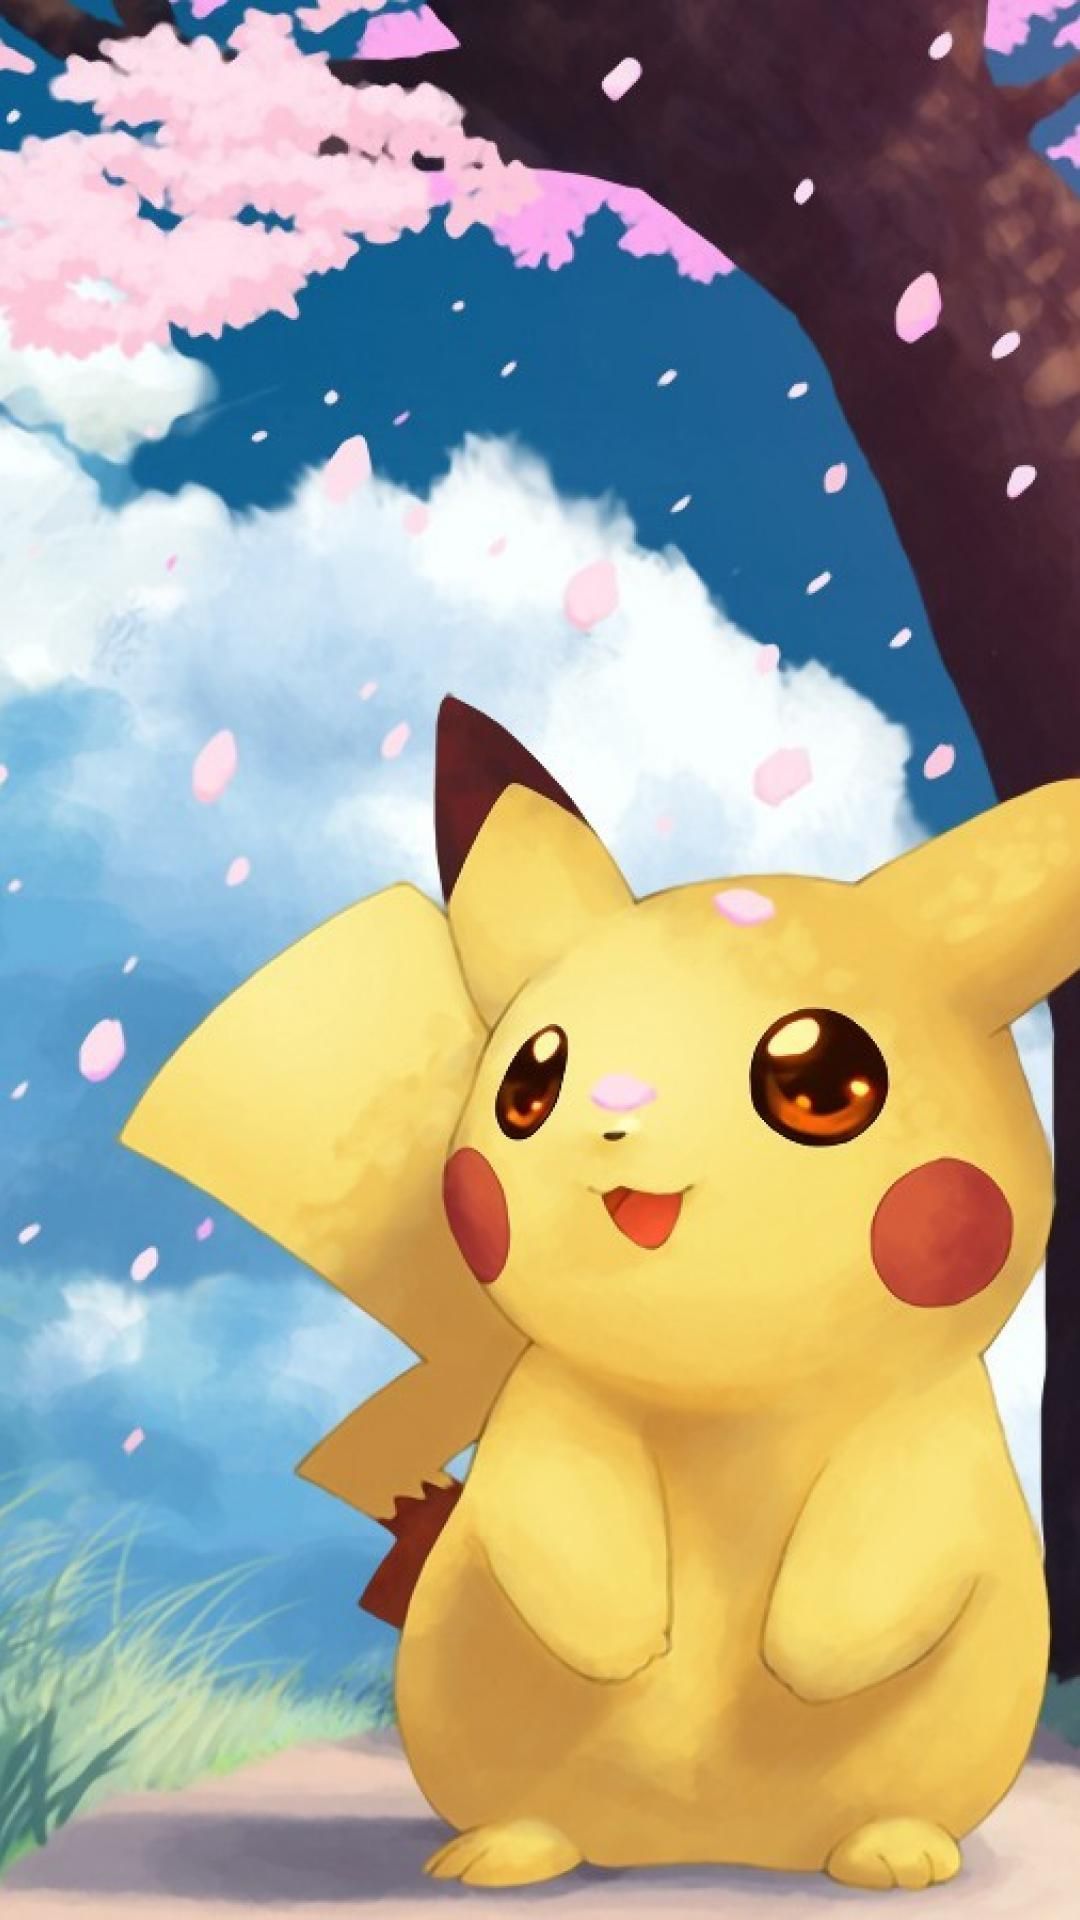 Pikachu Pokemon Nhanh Dễ  Ảnh miễn phí trên Pixabay